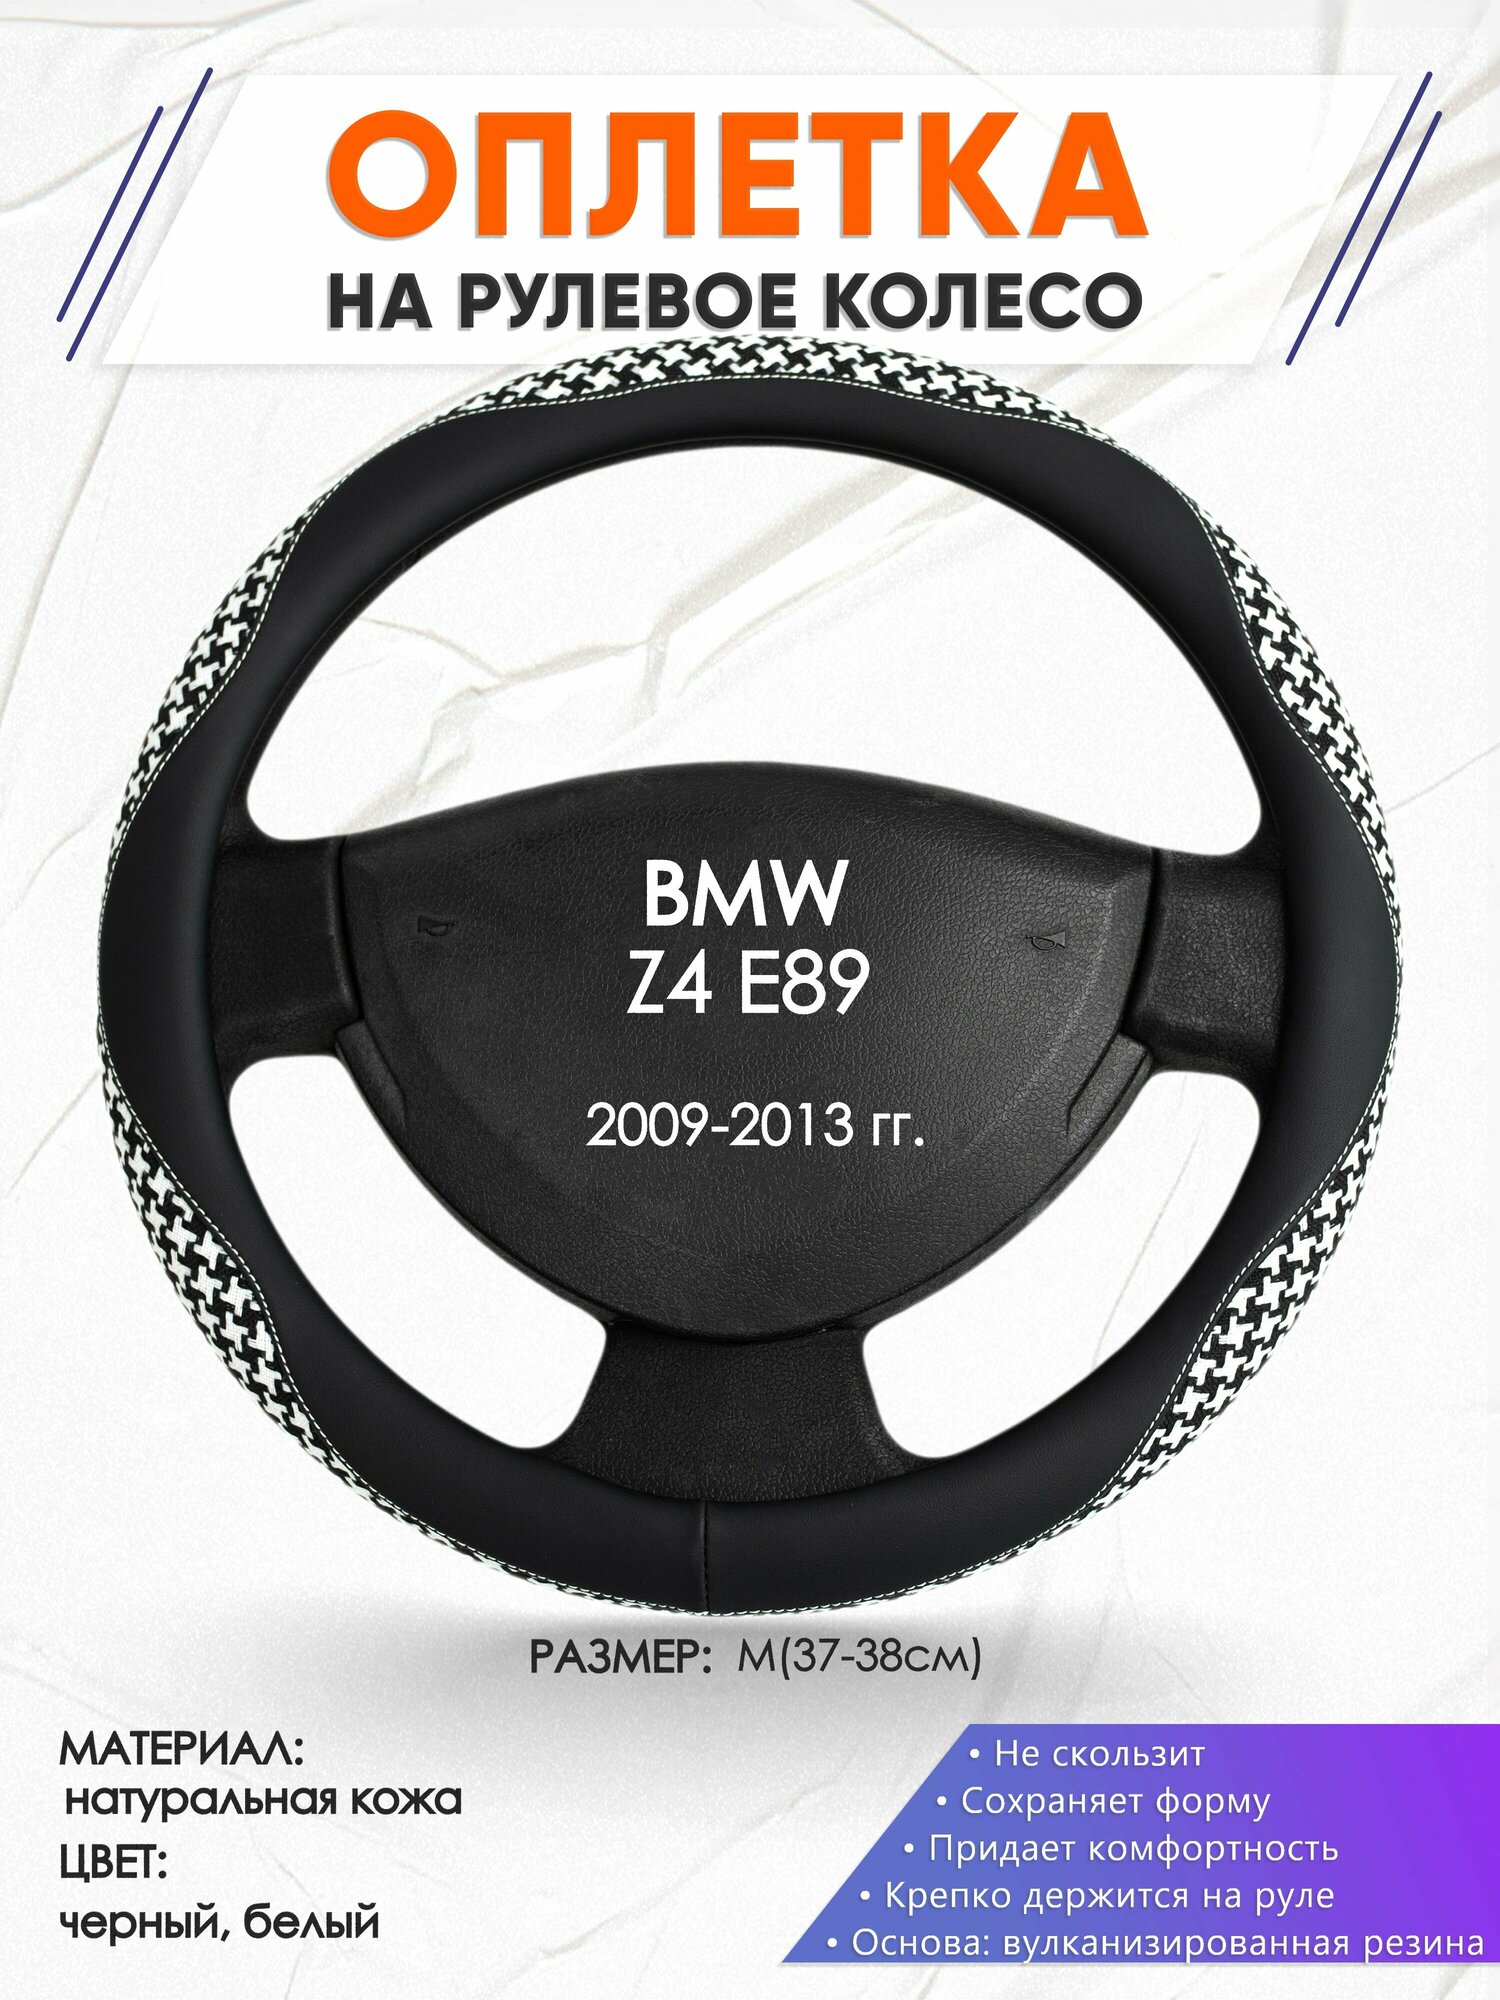 Оплетка наруль для BMW Z4 E89(Бмв зет4 Е89) 2009-2013 годов выпуска, размер M(37-38см), Натуральная кожа 21